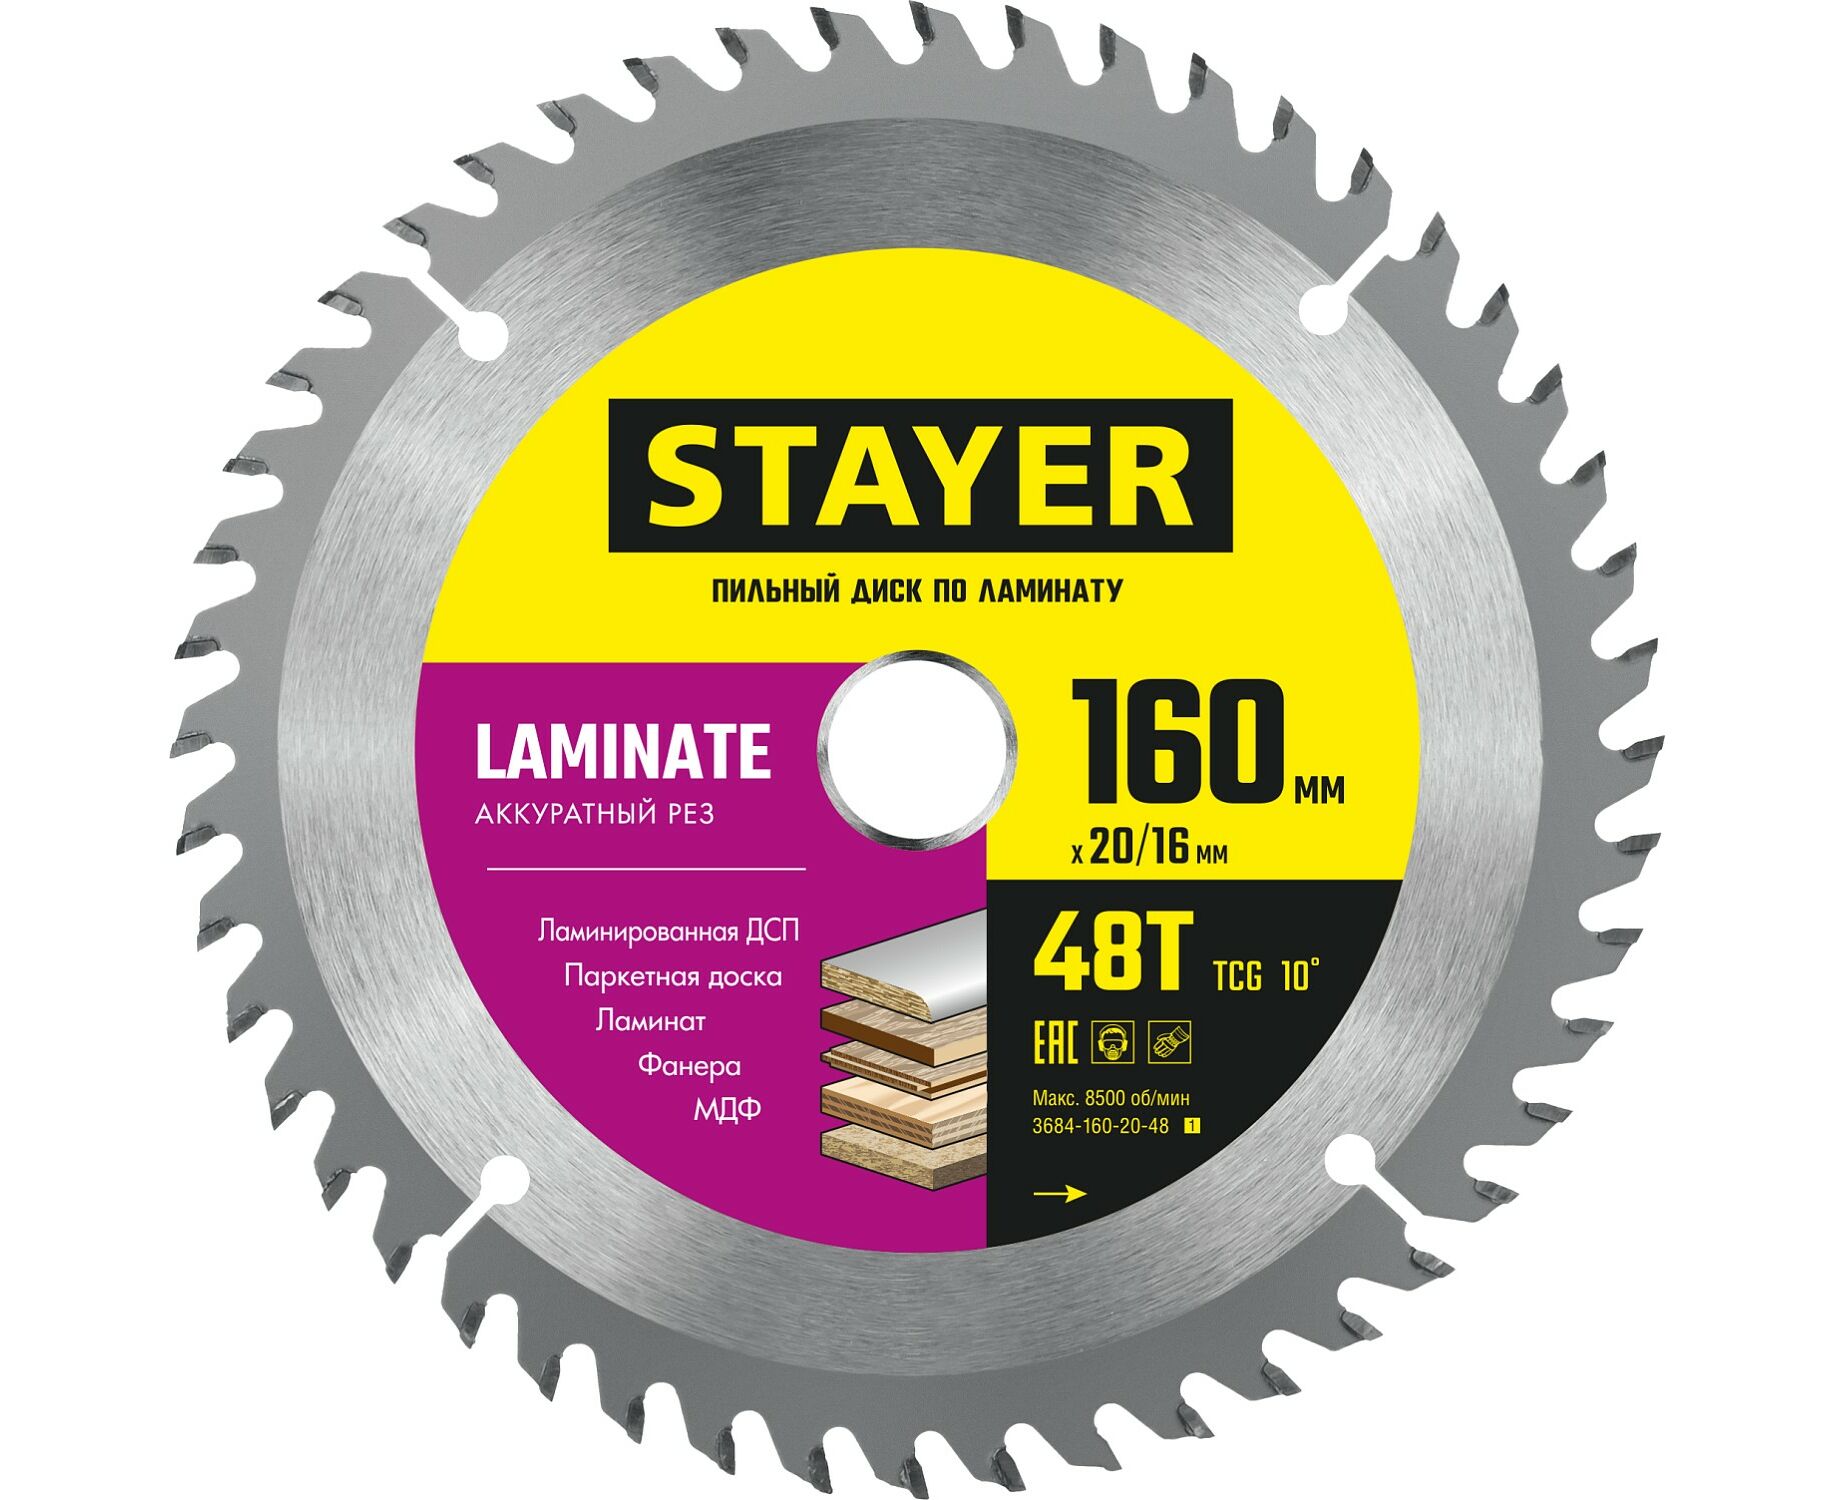 Пильный диск STAYER LAMINATE 160 x 20/16мм 48T, по ламинату, аккуратный рез пильный диск stayer laminate 210 x 32 30мм 56т по ламинату аккуратный рез